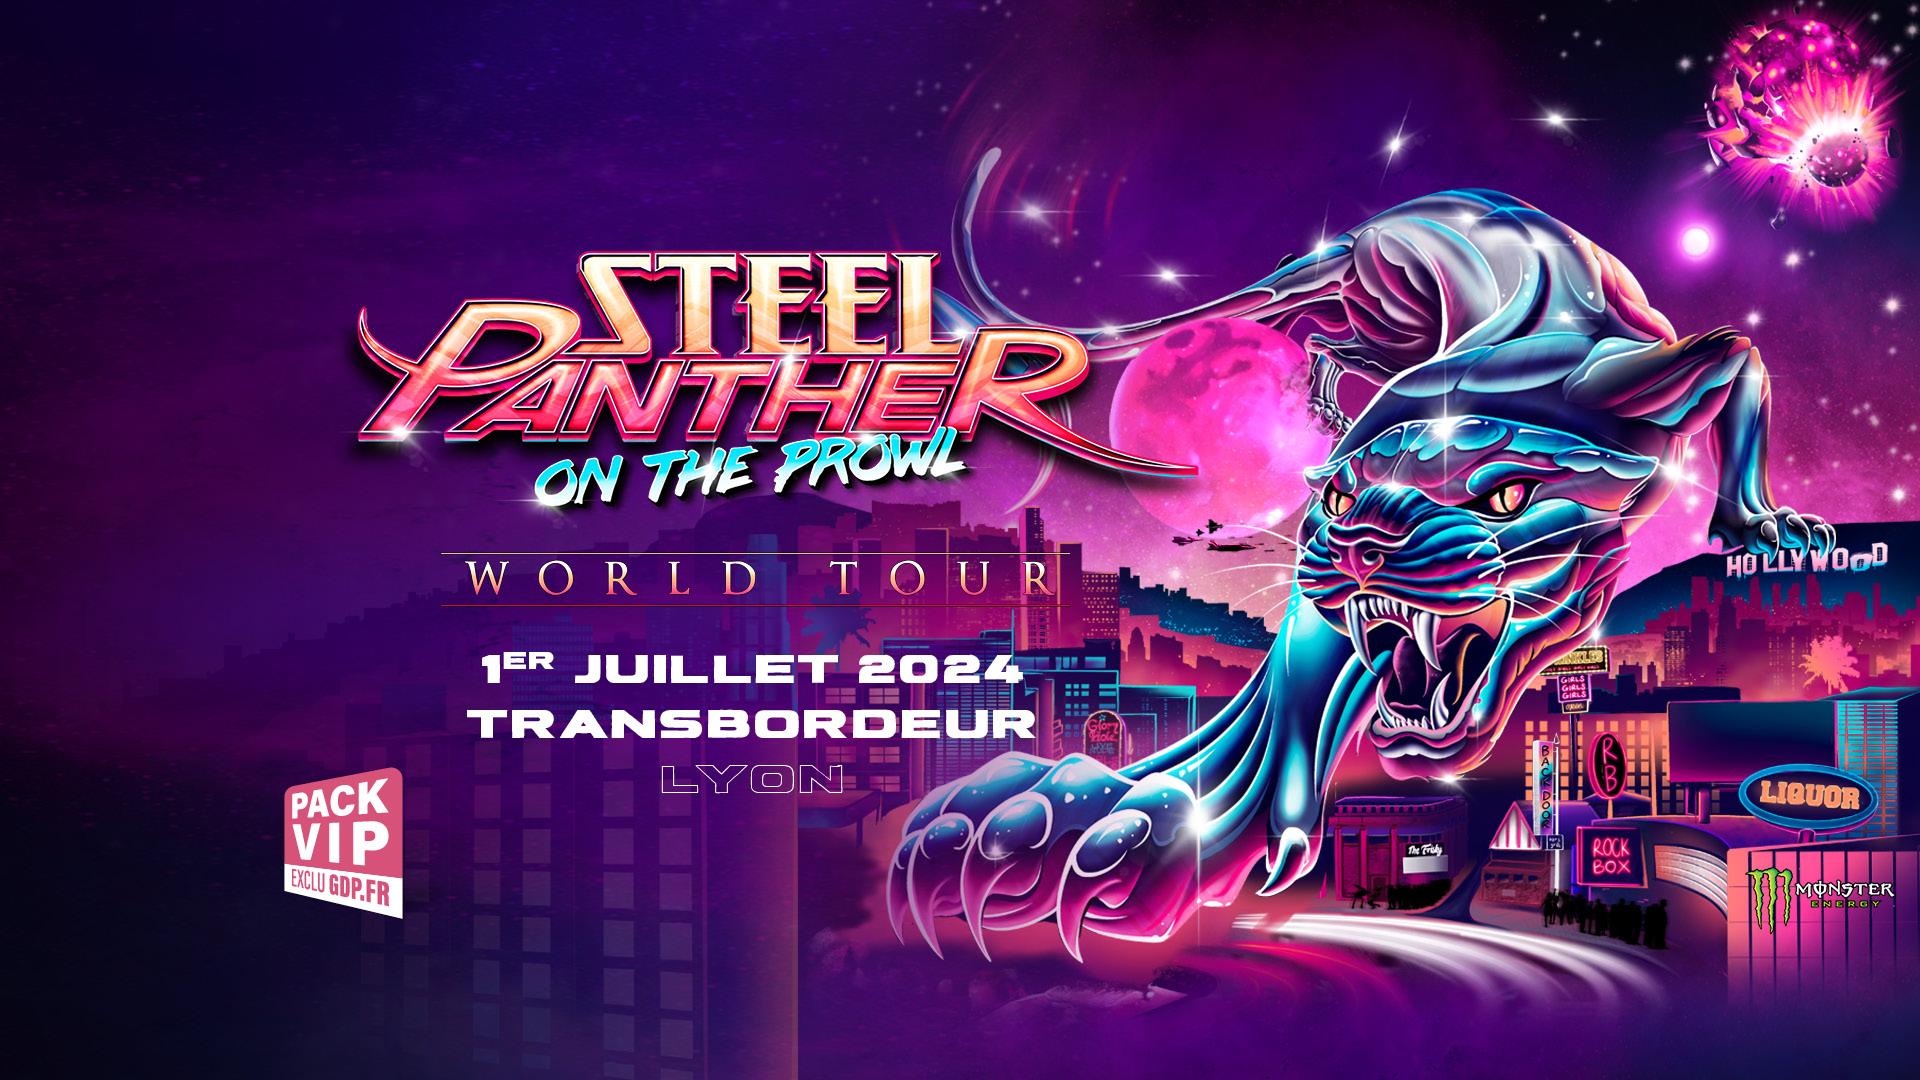 Steel panther lyon 2024